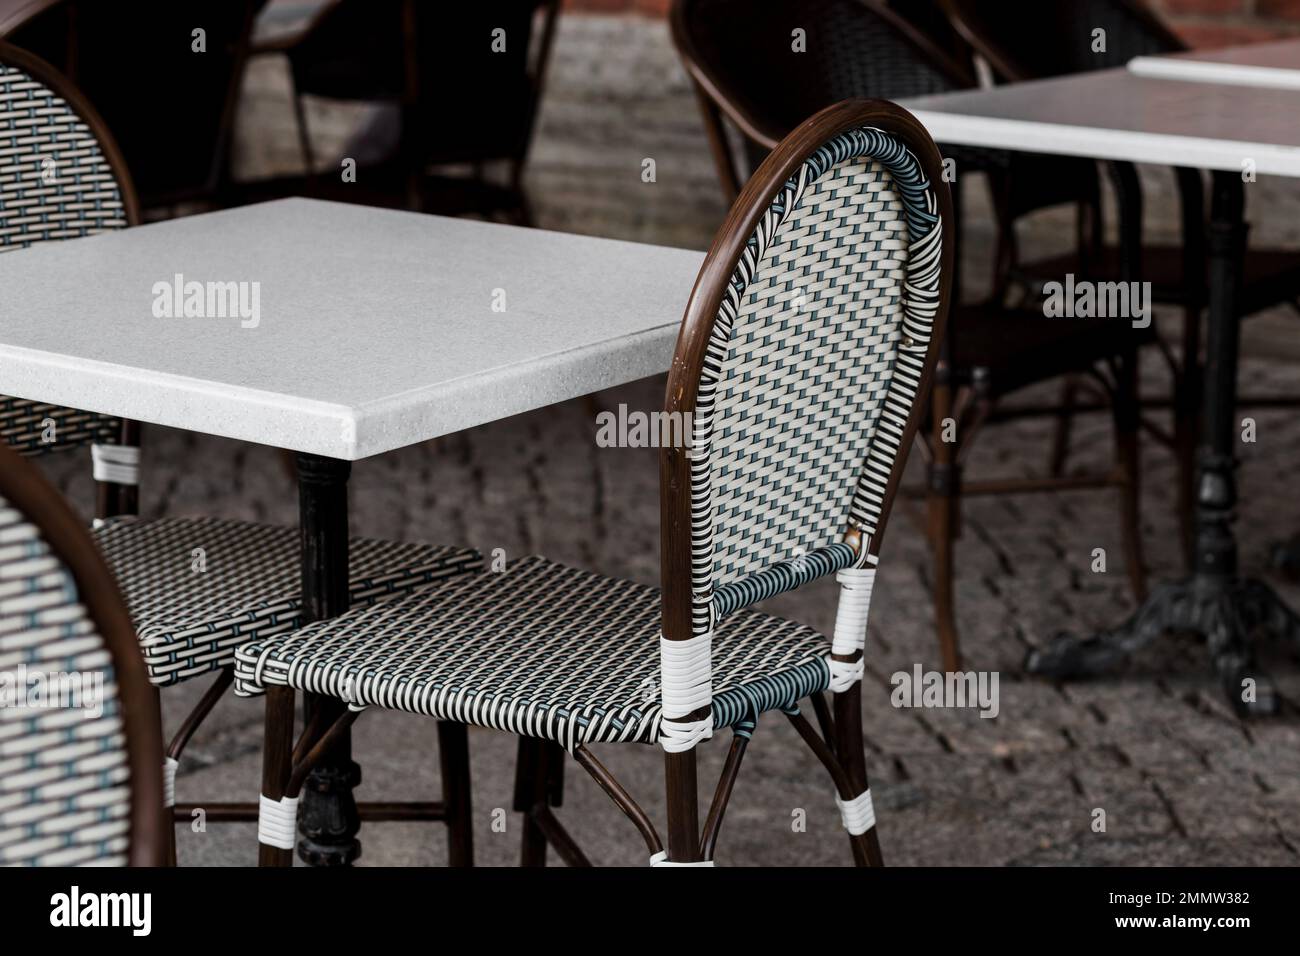 Cafe-Tische und -Stühle draußen. Café im Freien mit Korbmöbeln  Stockfotografie - Alamy